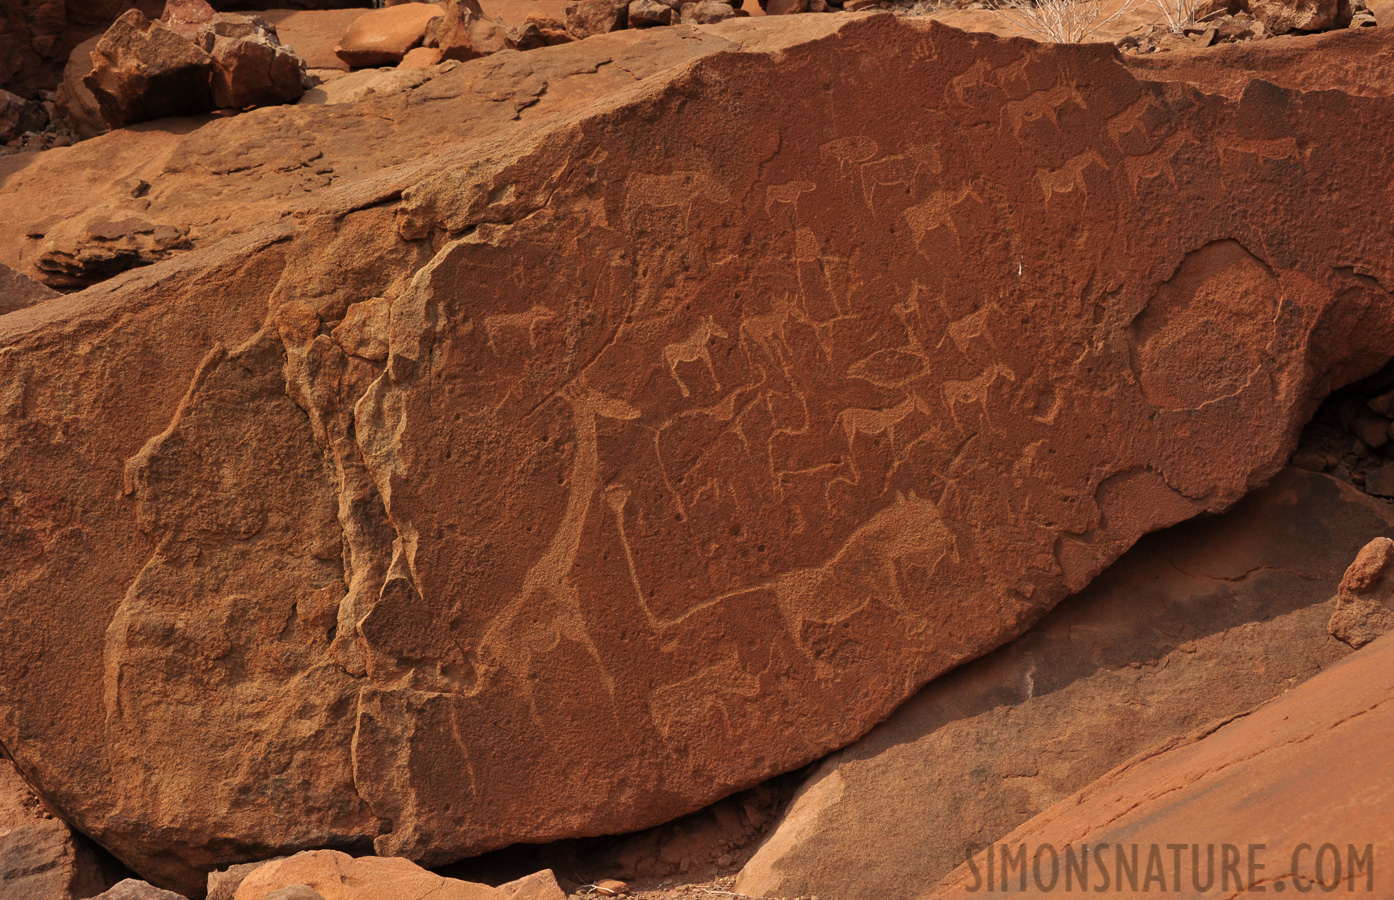 San People Rock Engravings [65 mm, 1/400 sec at f / 11, ISO 400]